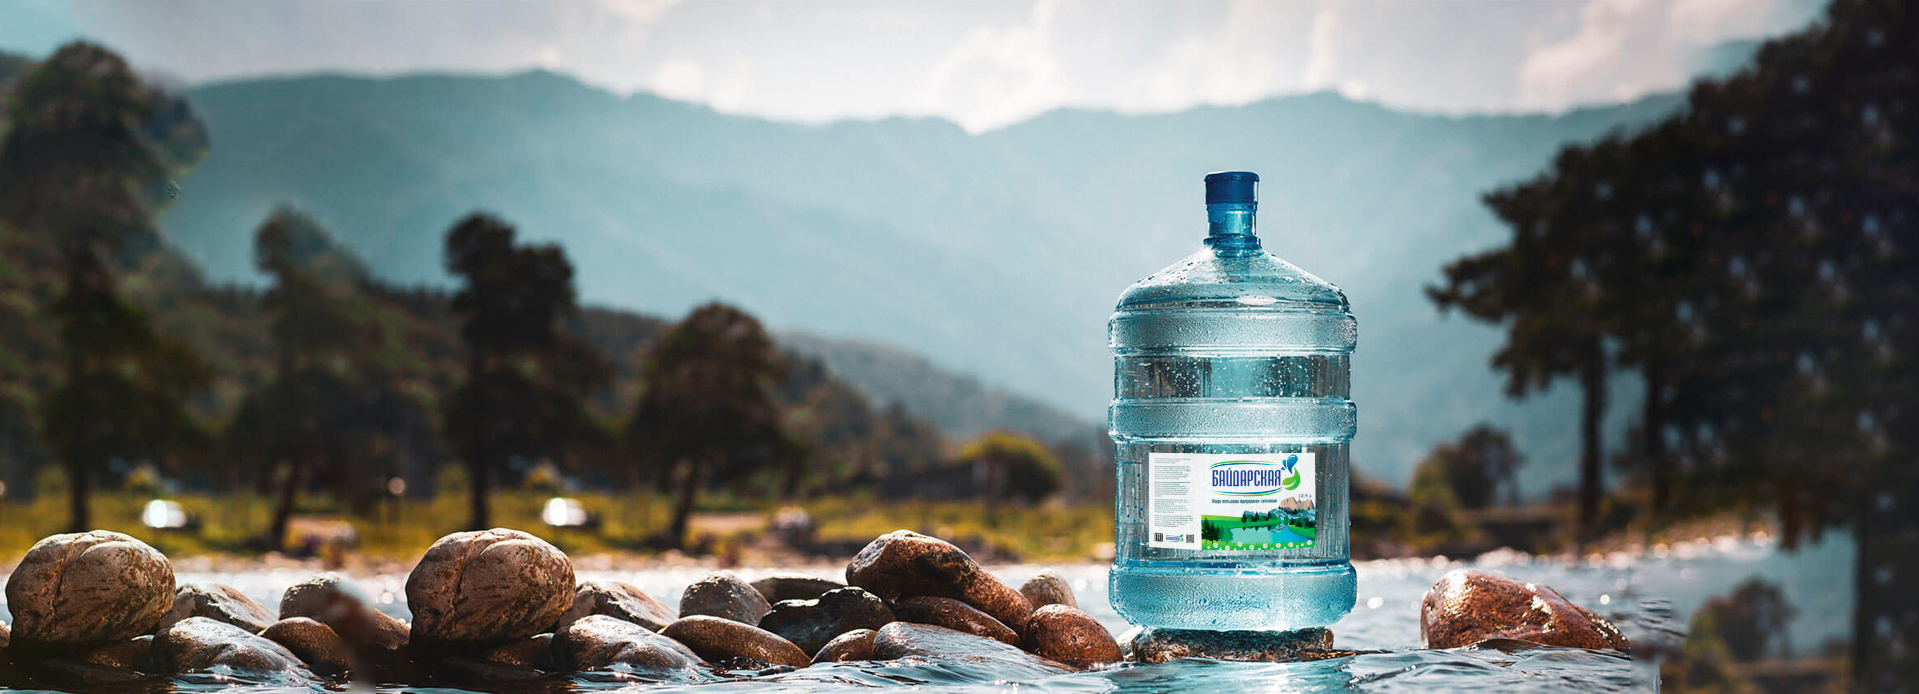 Вода ТМ «Байдарская» - экологически чистый продукт